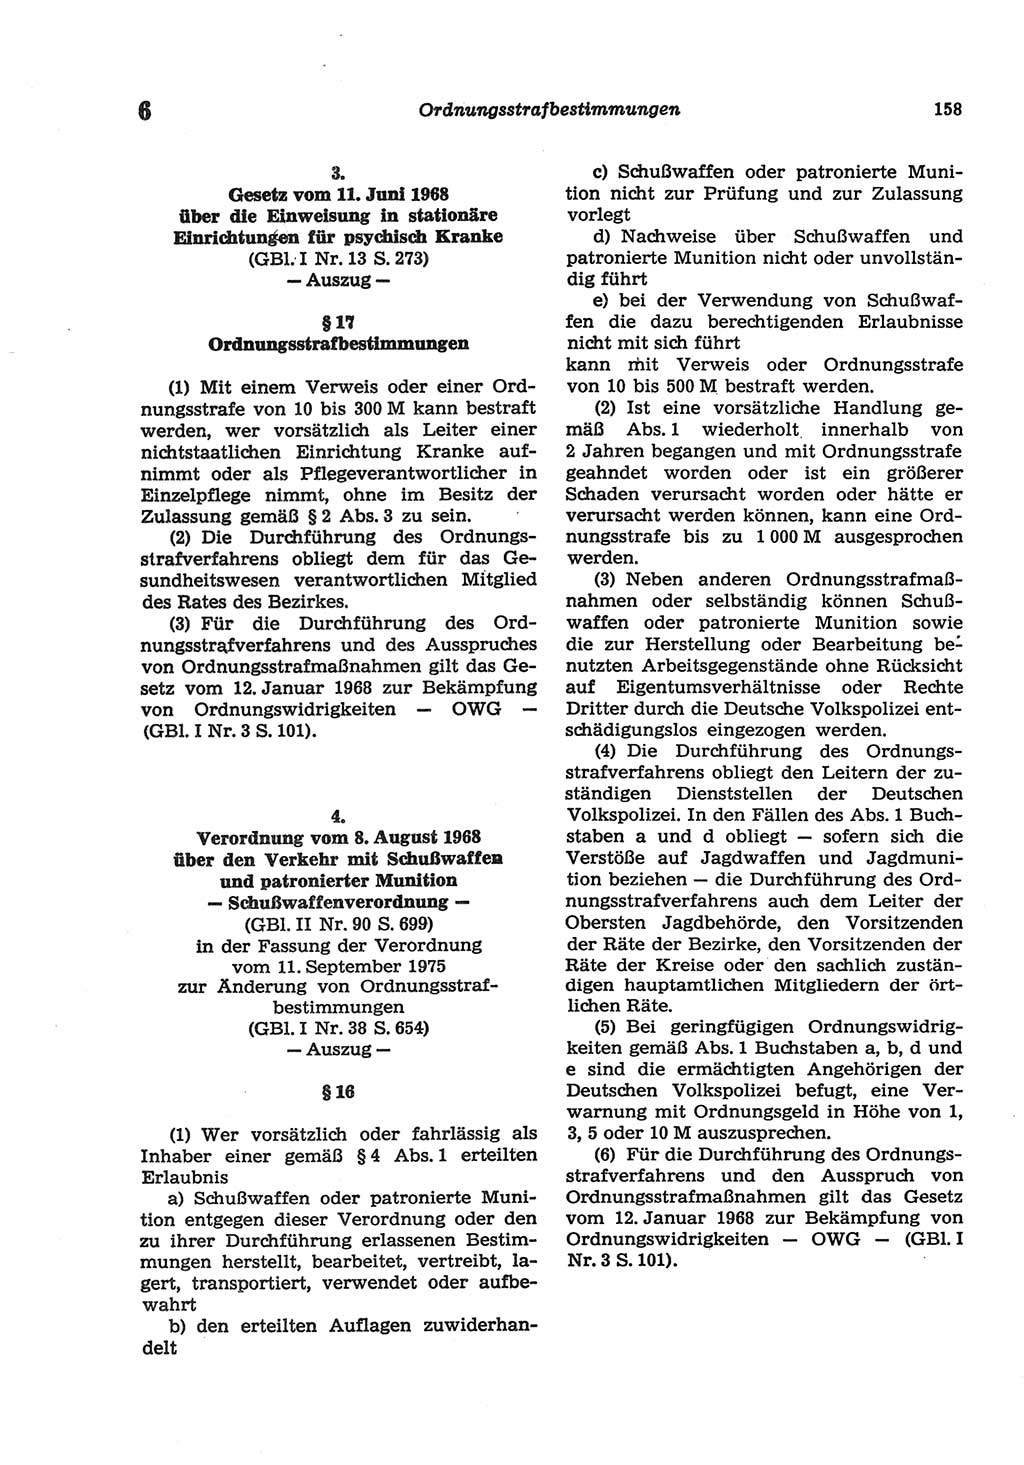 Strafgesetzbuch (StGB) der Deutschen Demokratischen Republik (DDR) und angrenzende Gesetze und Bestimmungen 1977, Seite 158 (StGB DDR Ges. Best. 1977, S. 158)